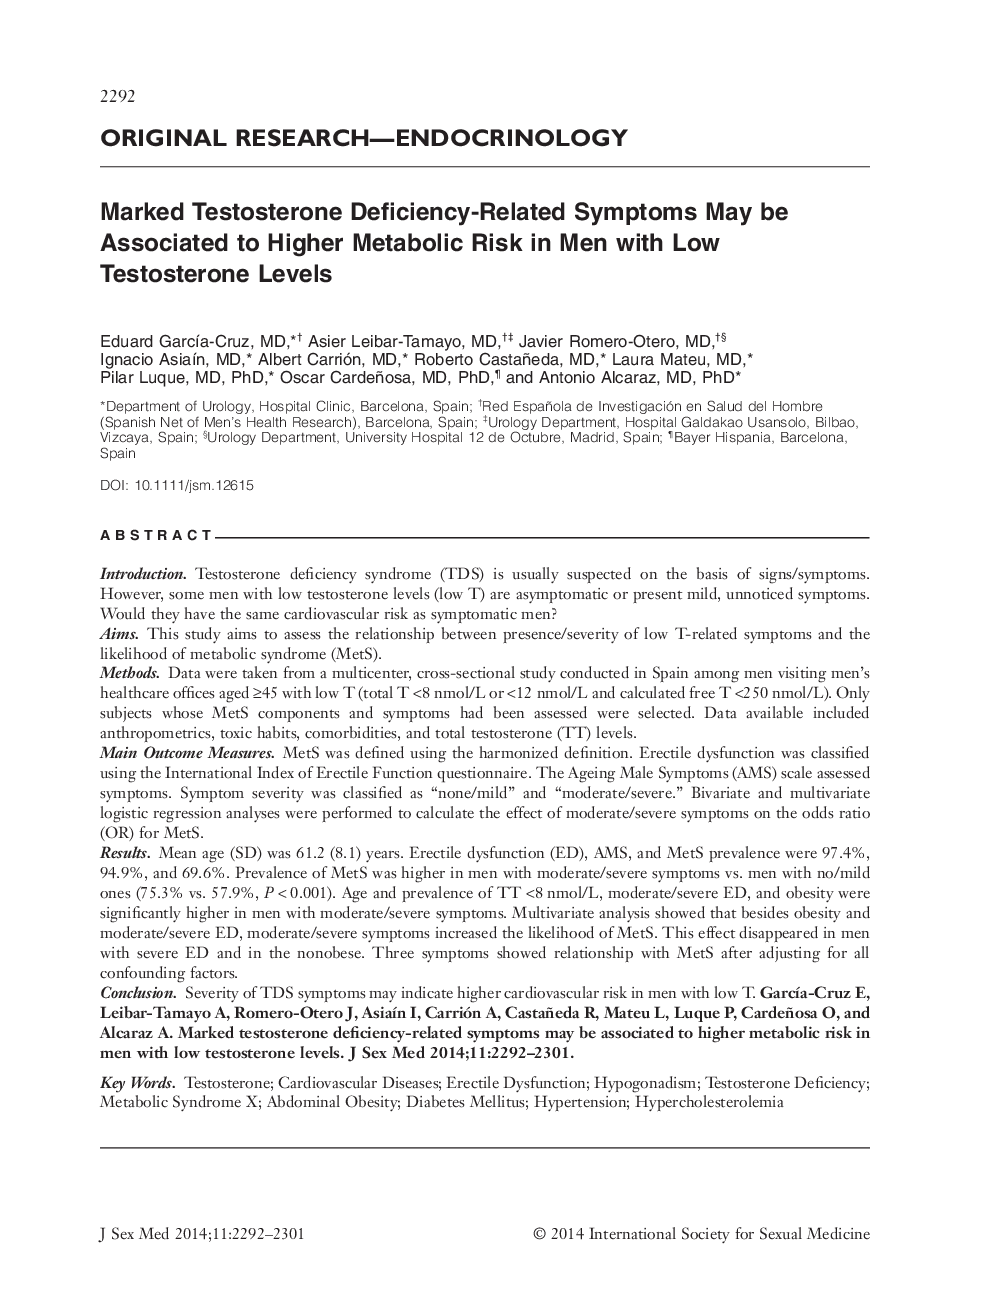 Marked Testosterone DeficiencyâRelated Symptoms May be Associated to Higher Metabolic Risk in Men with Low Testosterone Levels